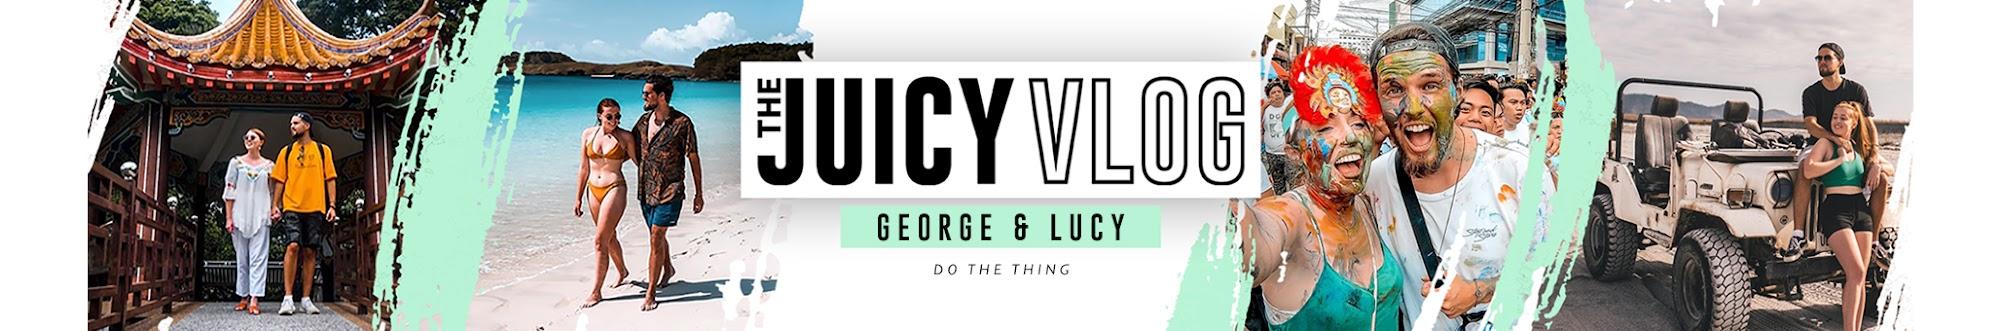 The Juicy Vlog